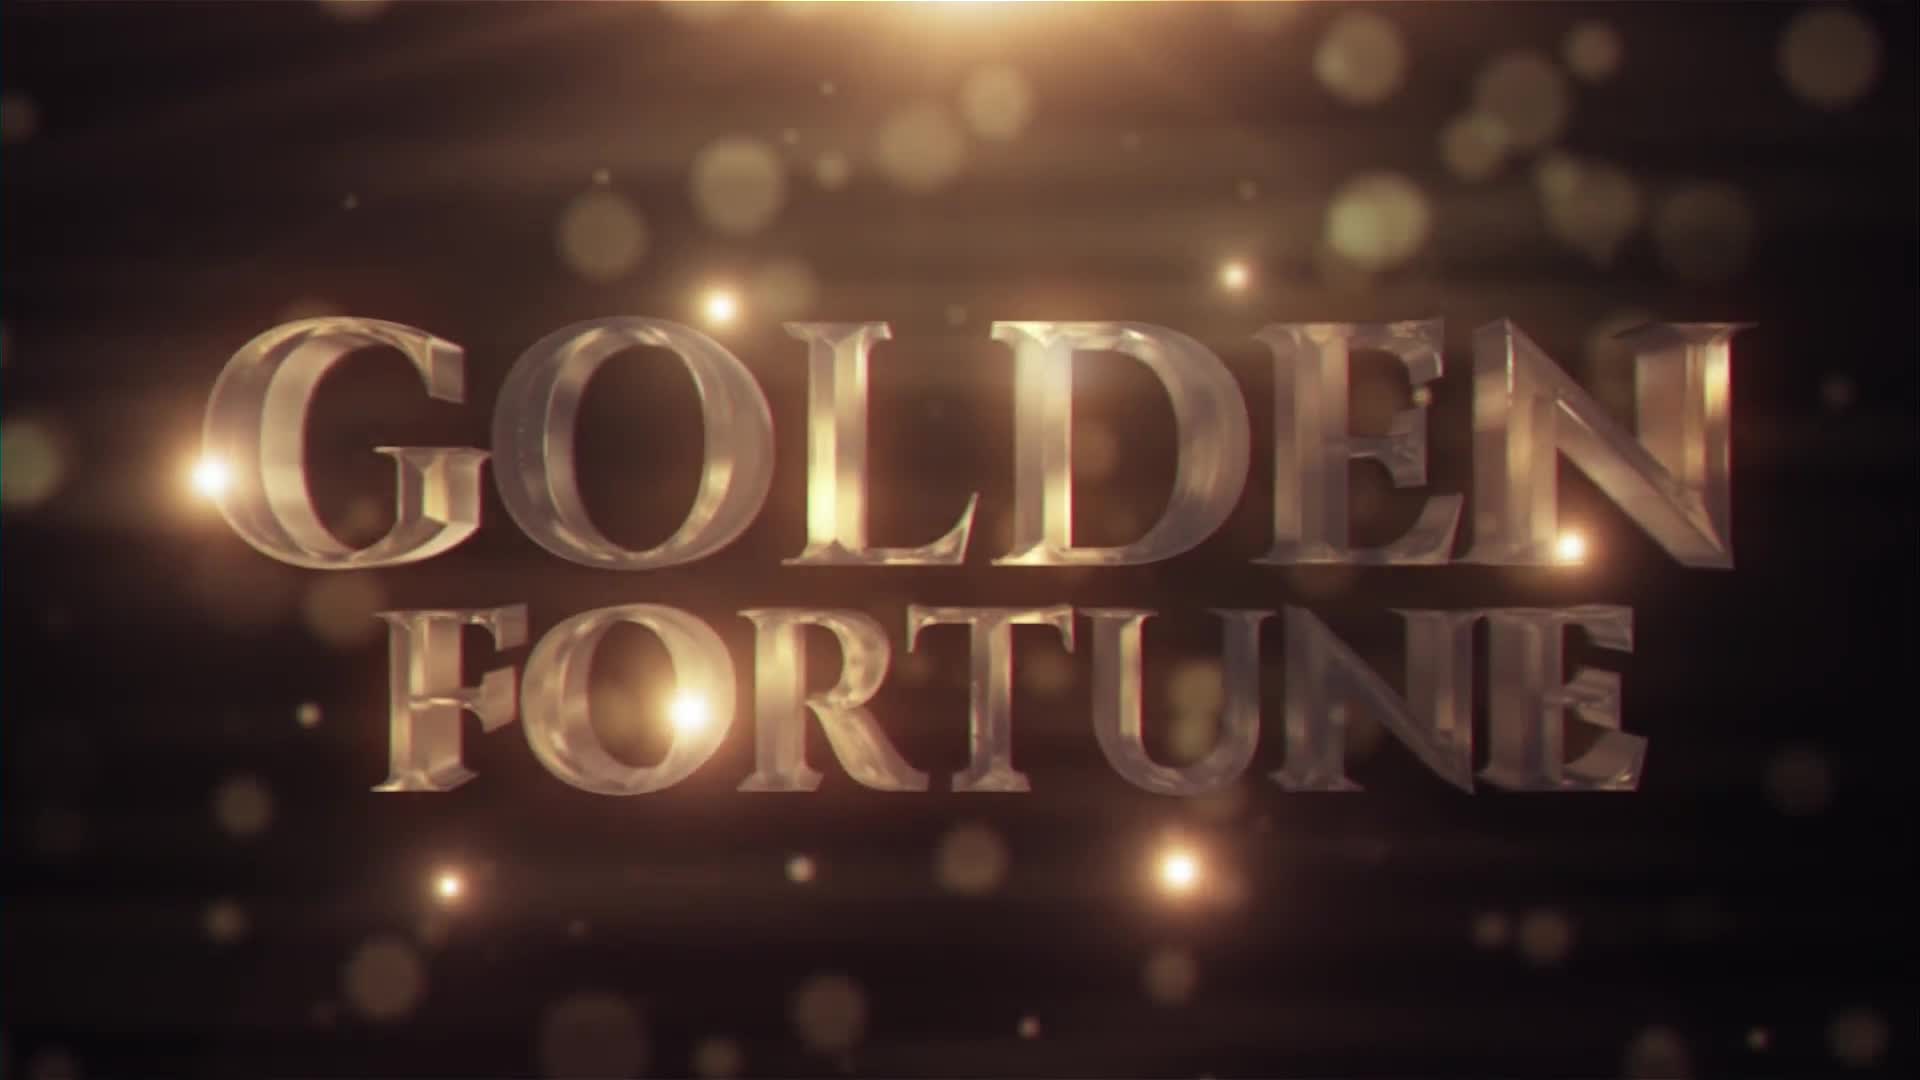 Golden Fortune Videohive 22595458 Premiere Pro Image 1